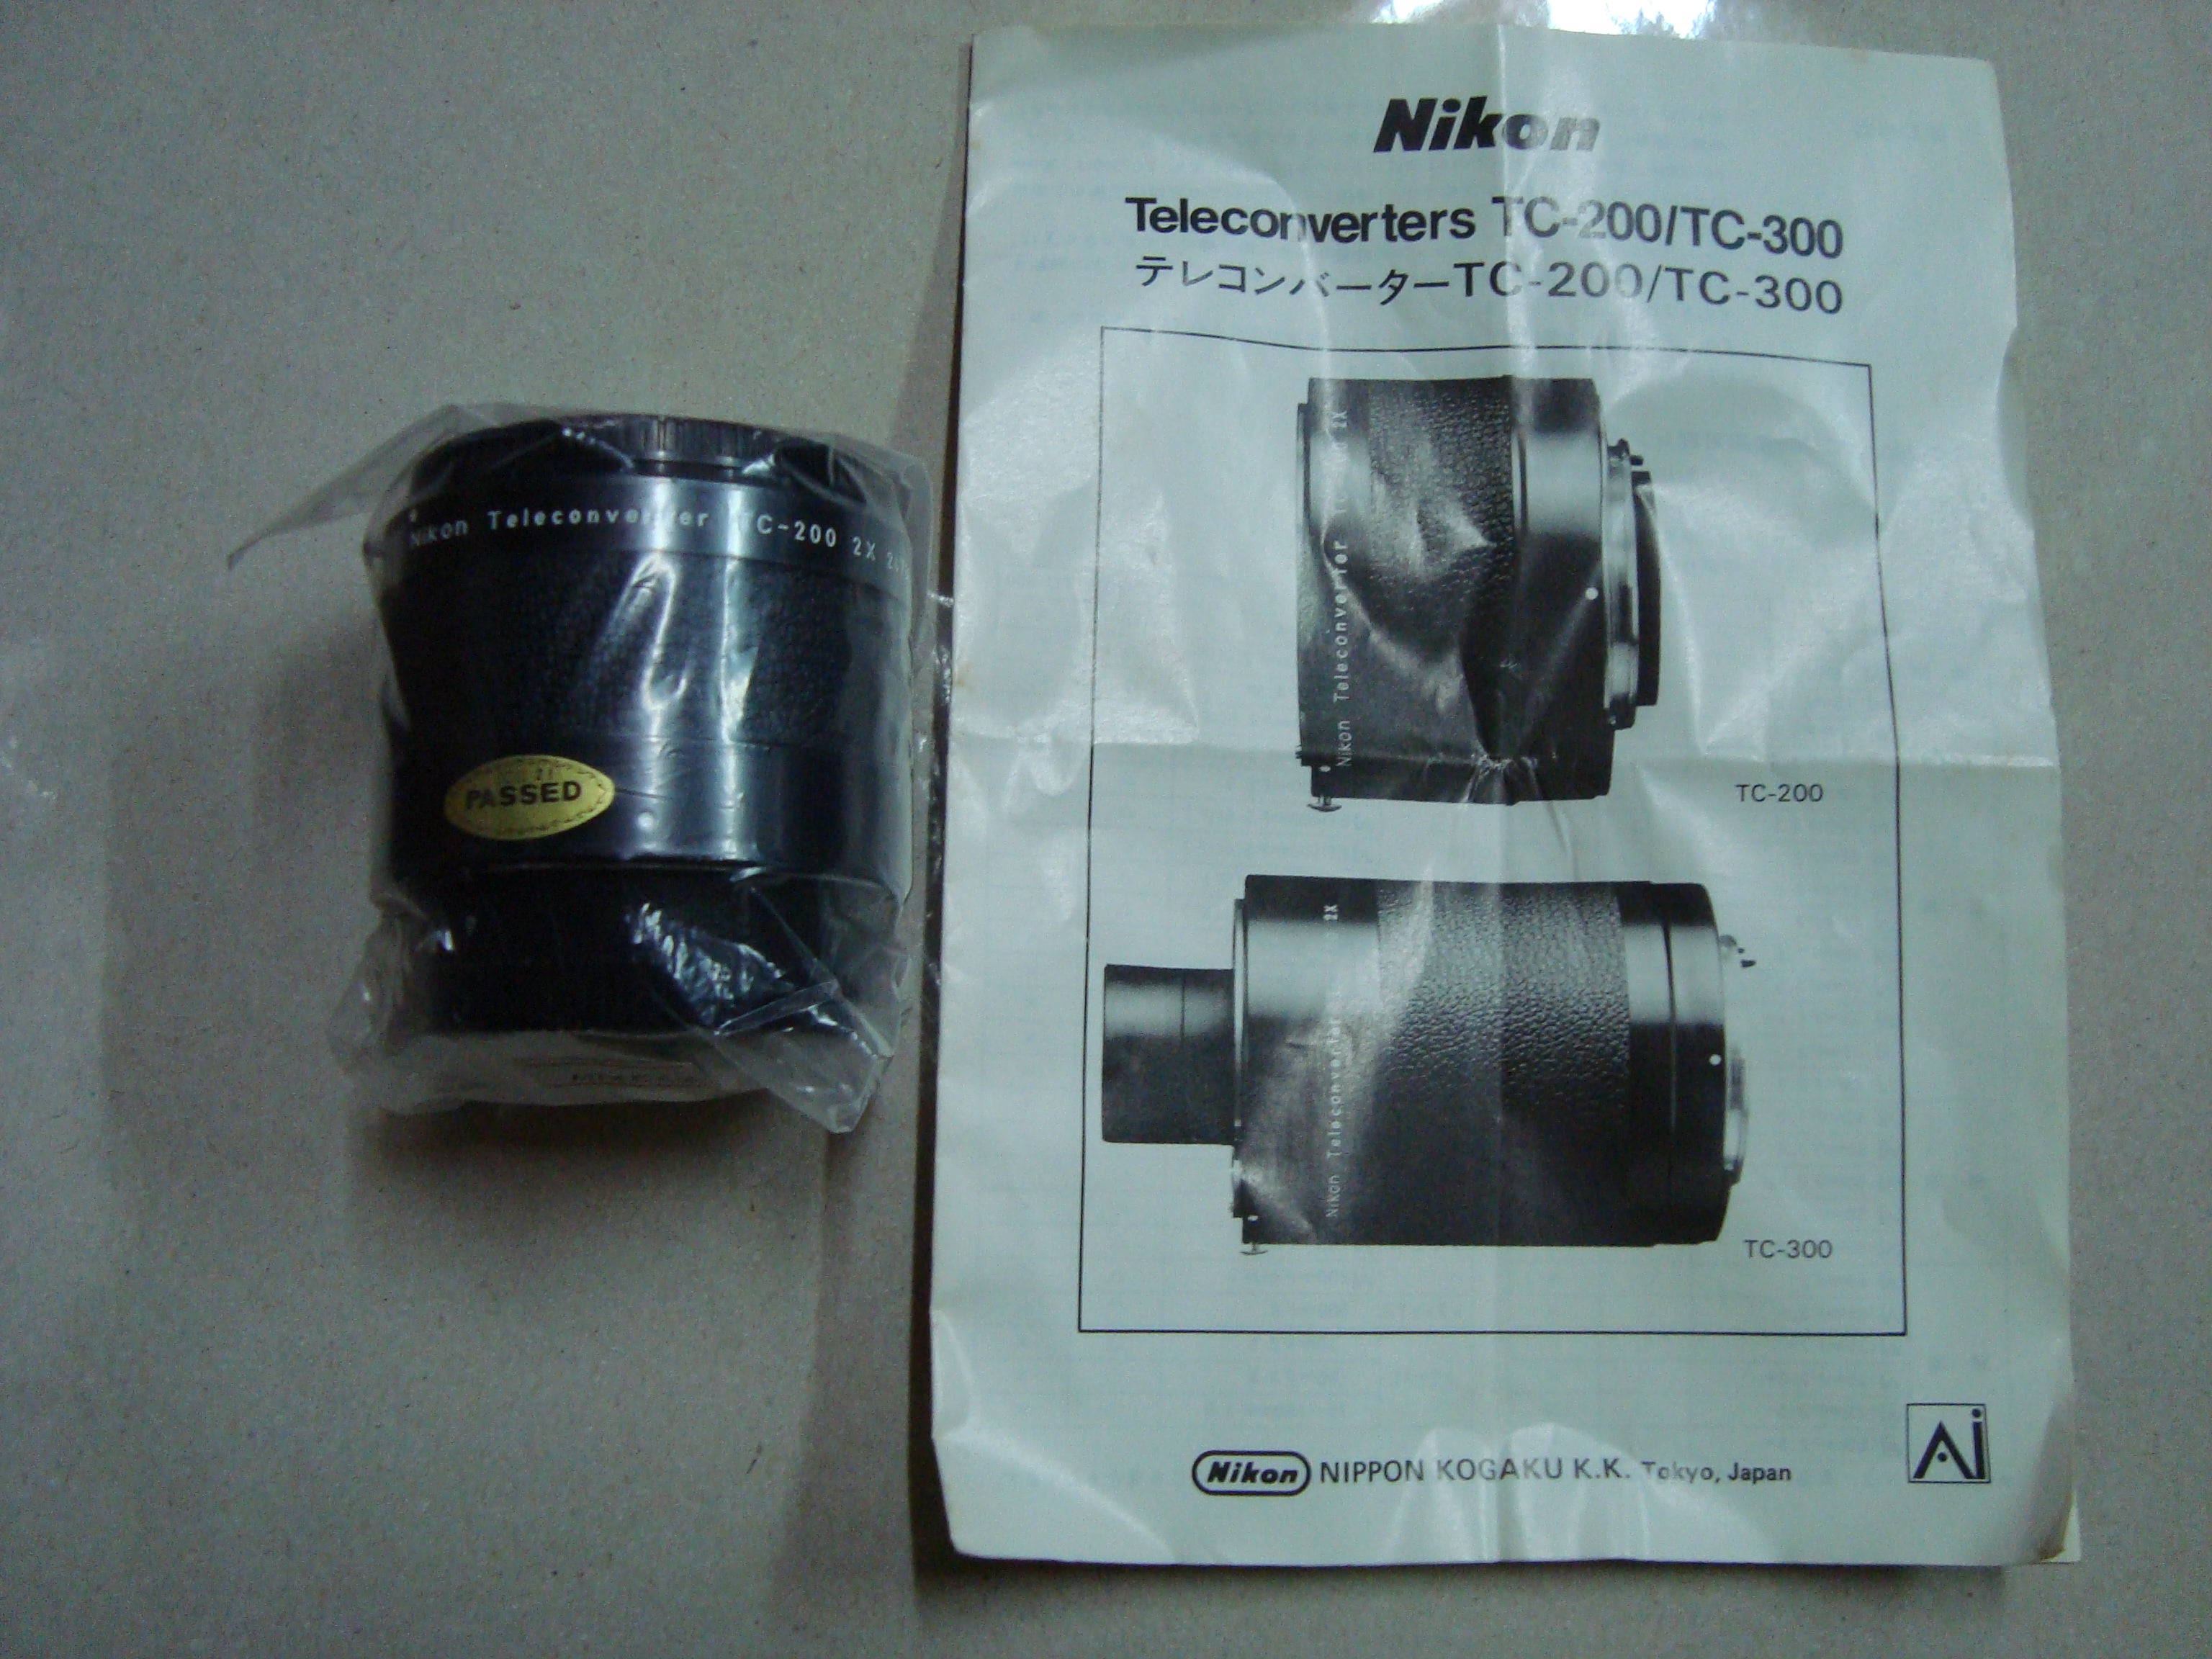 Nikon teleconverter TC-200/TC-300